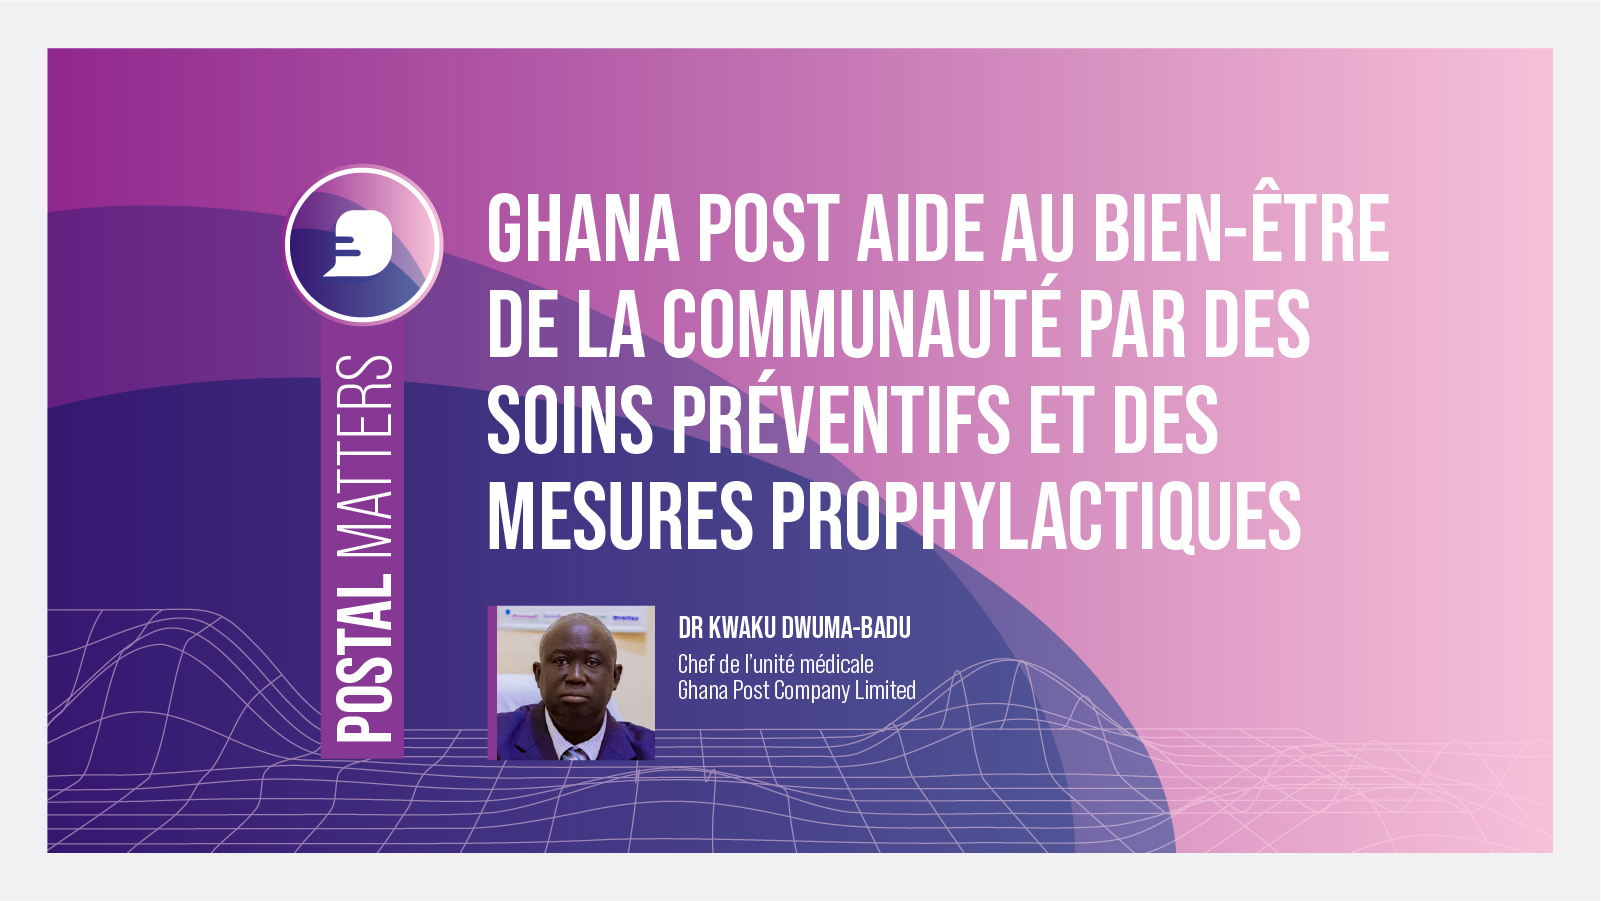 Ghana Post aide au bien-être de la communauté par des soins préventifs et des mesures prophylactiques